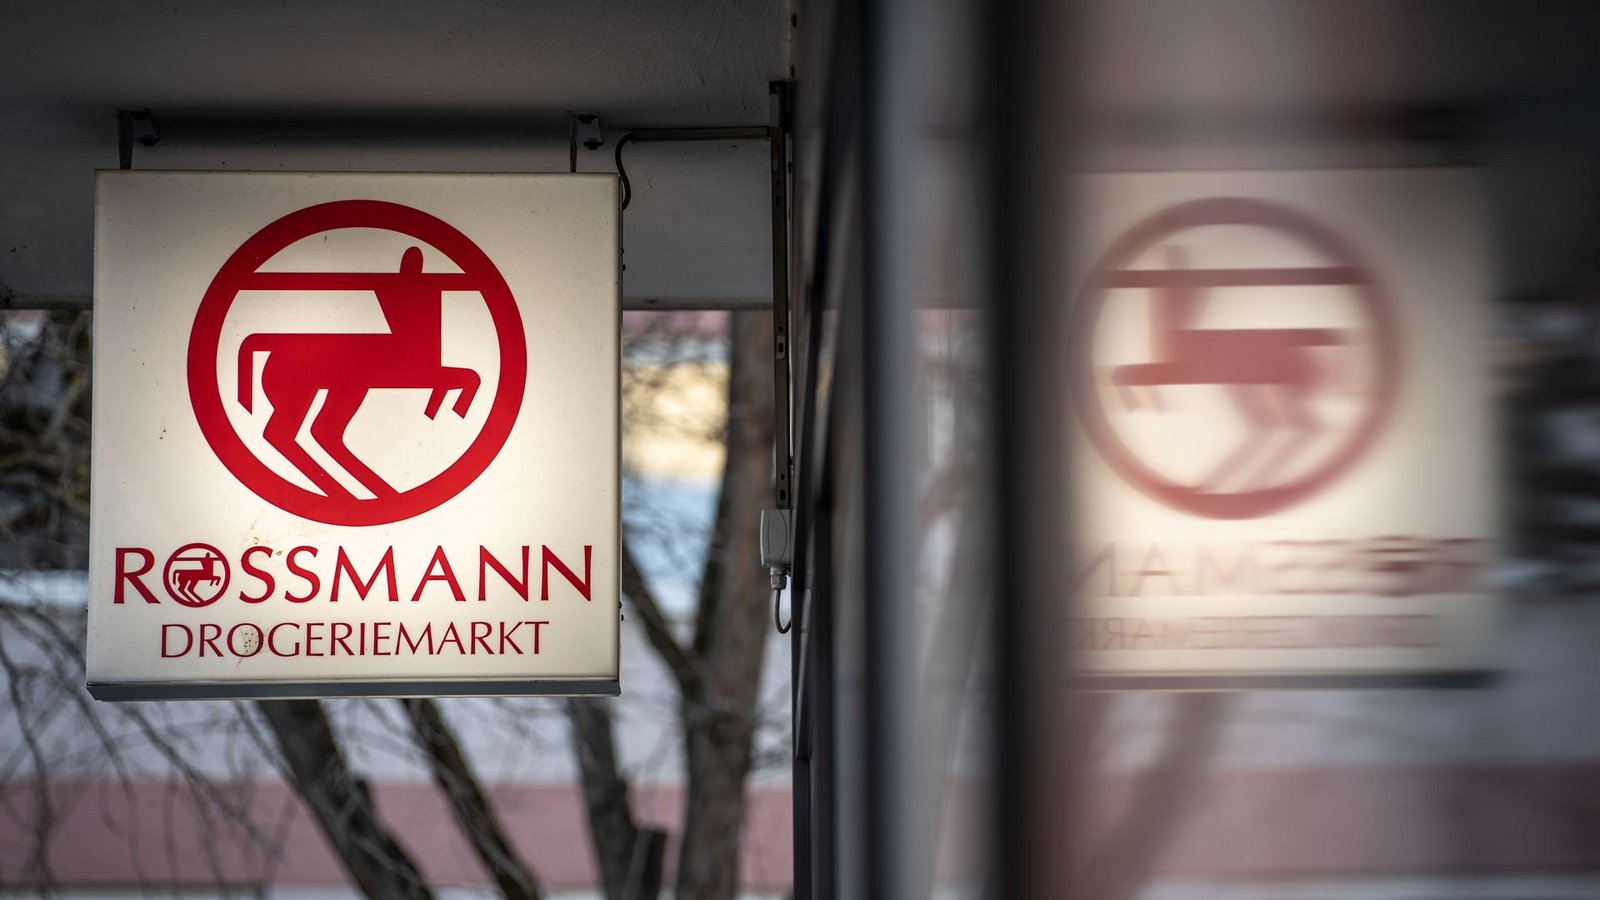 Die Drogeriemarktkette Rossmann hat im vergangenen Jahr deutlich zugelegt und einen Rekordumsatz verbucht.Foto: Frank Rumpenhorst/dpa